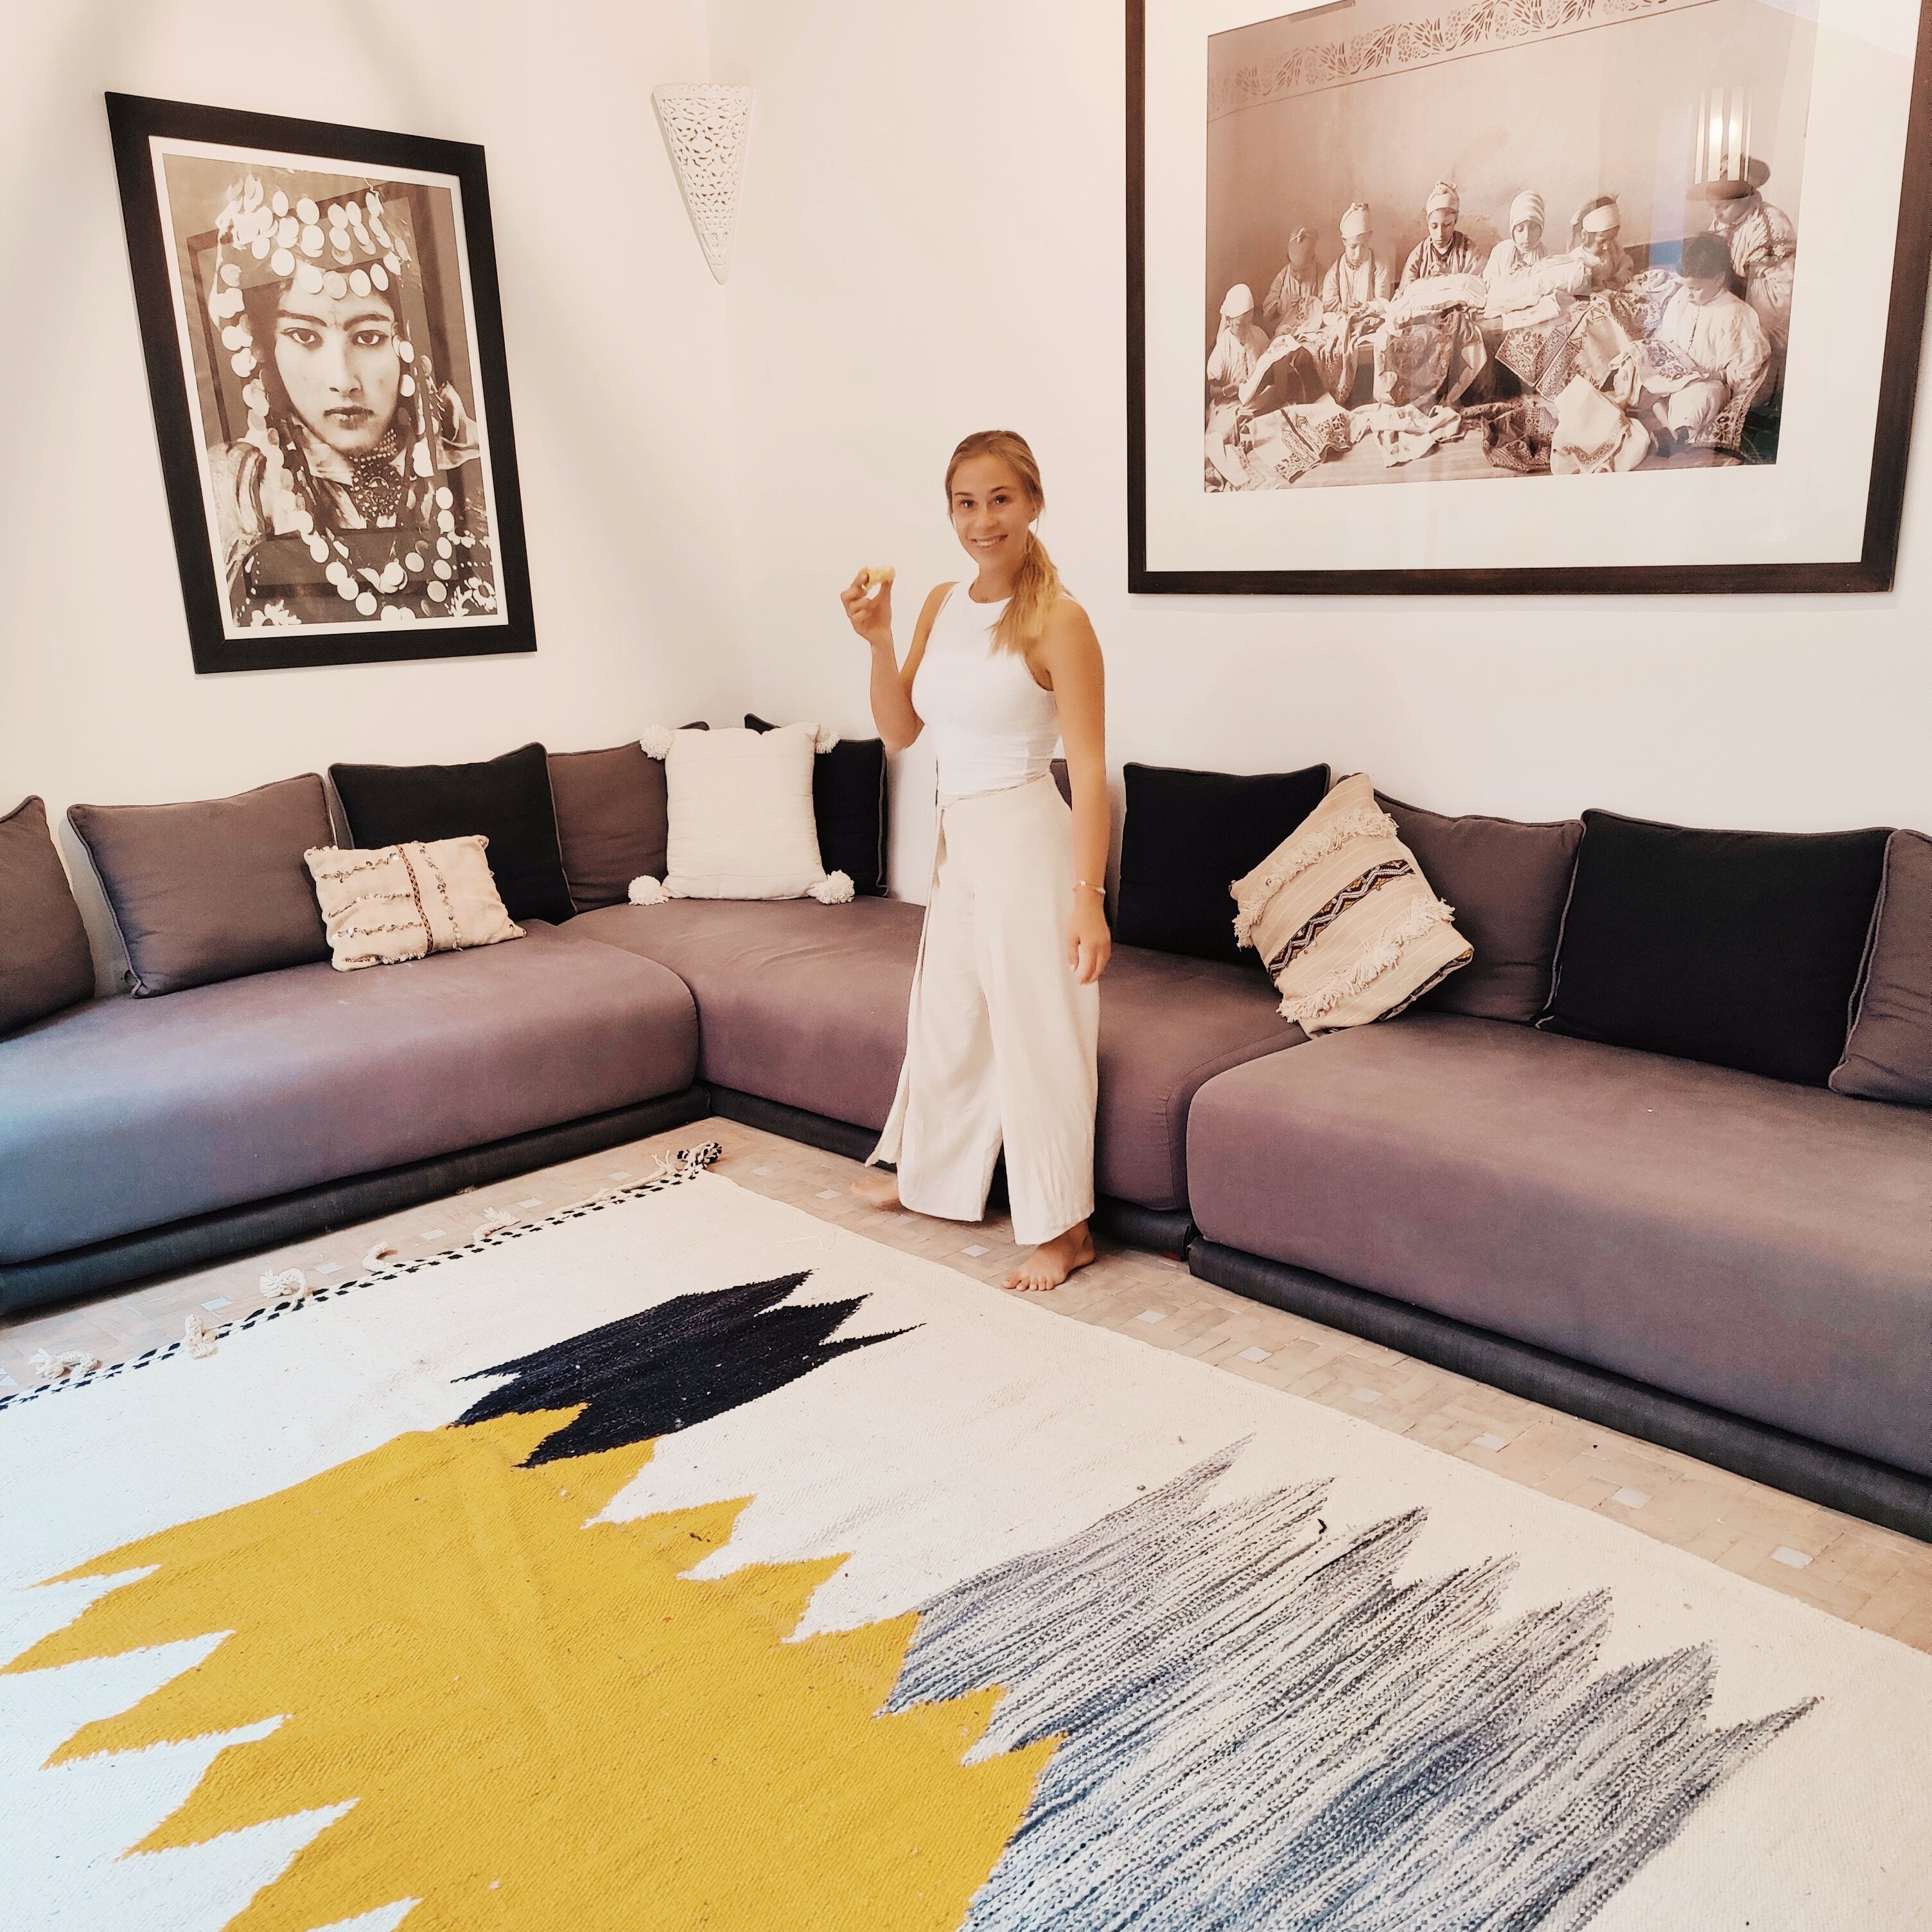 Kilim Teppich aus Marokko in Wohnzimmer mit Frau gelb weiss schwarz